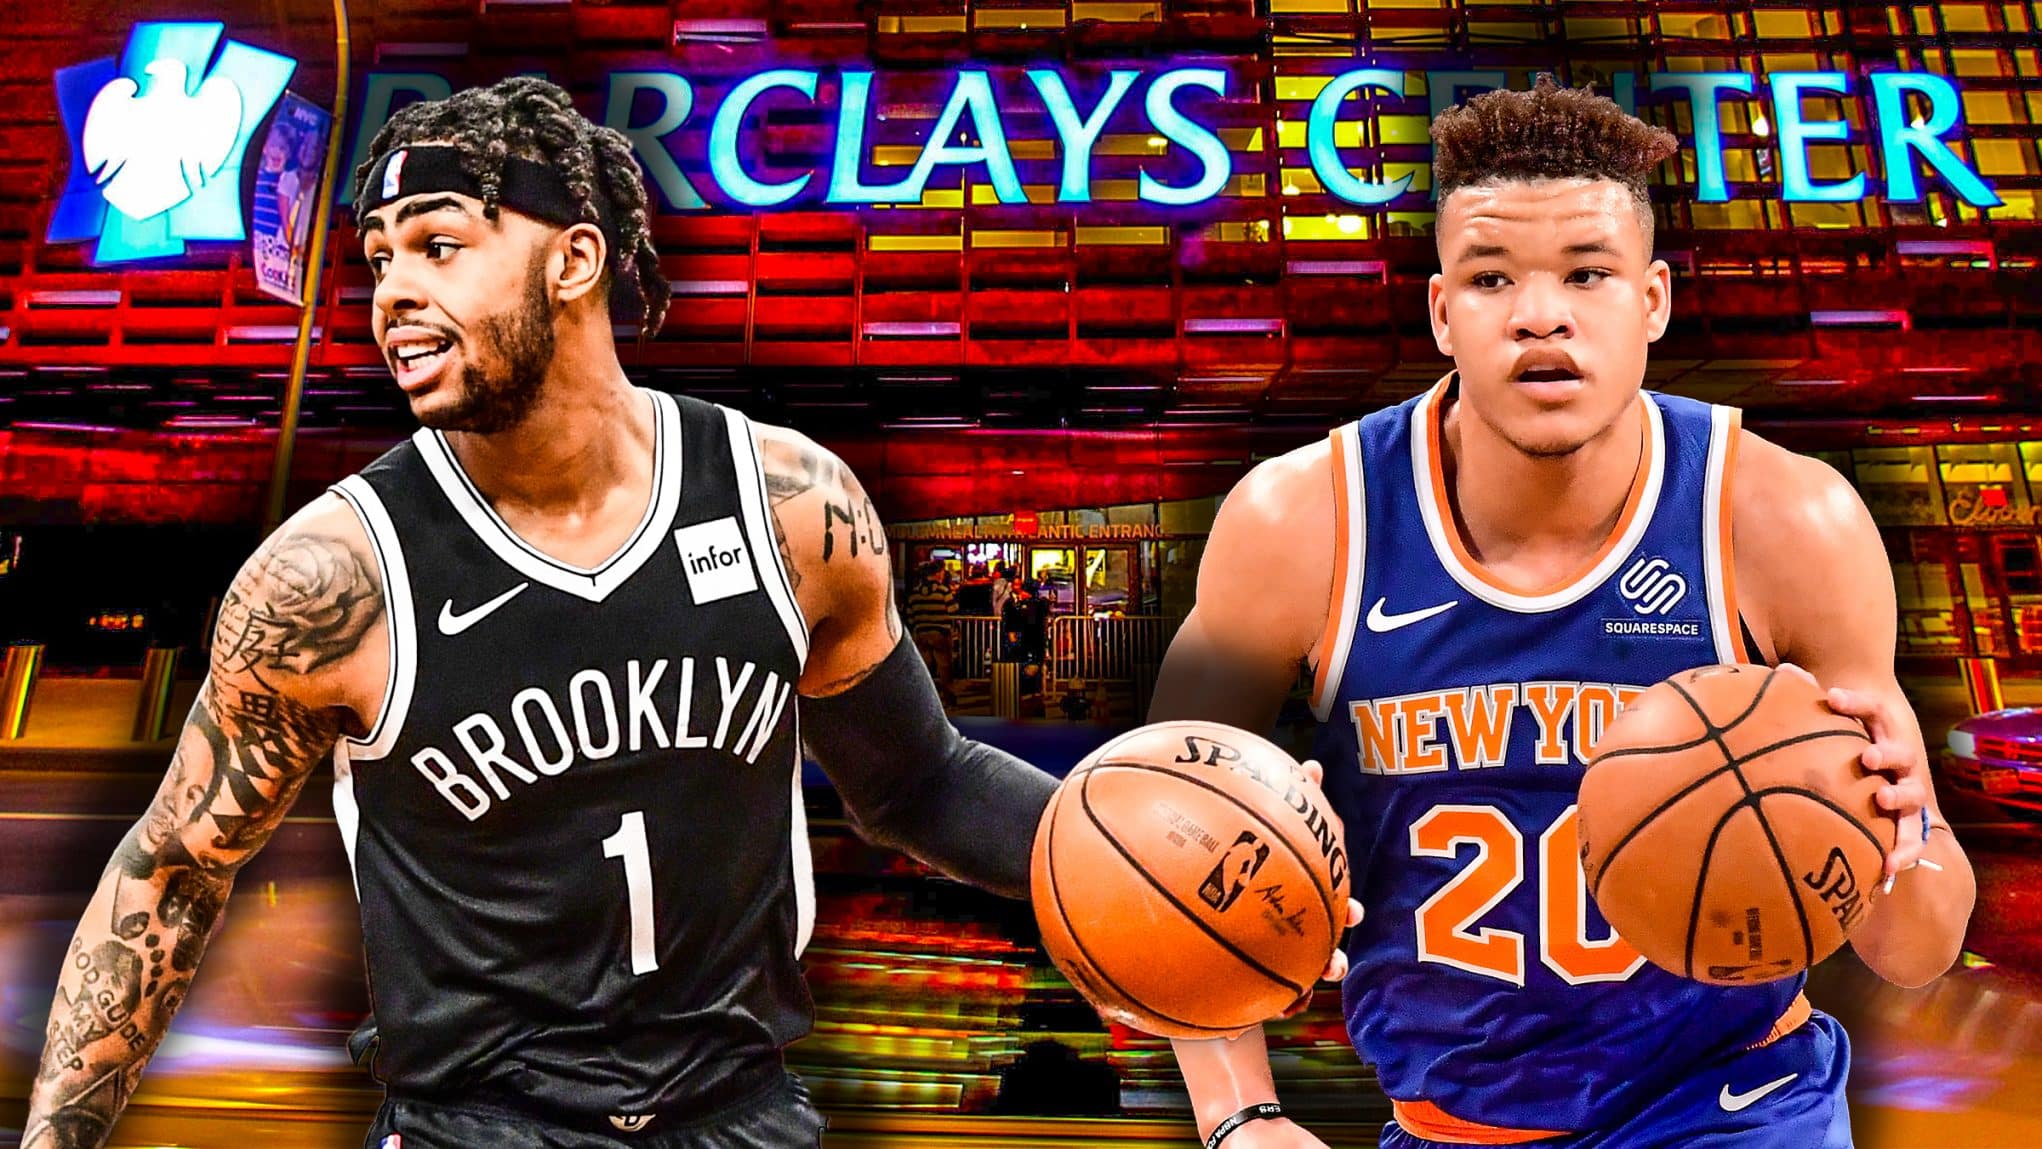 Equipos de la NBA Knicks de NY y Brooklyn Nets donan